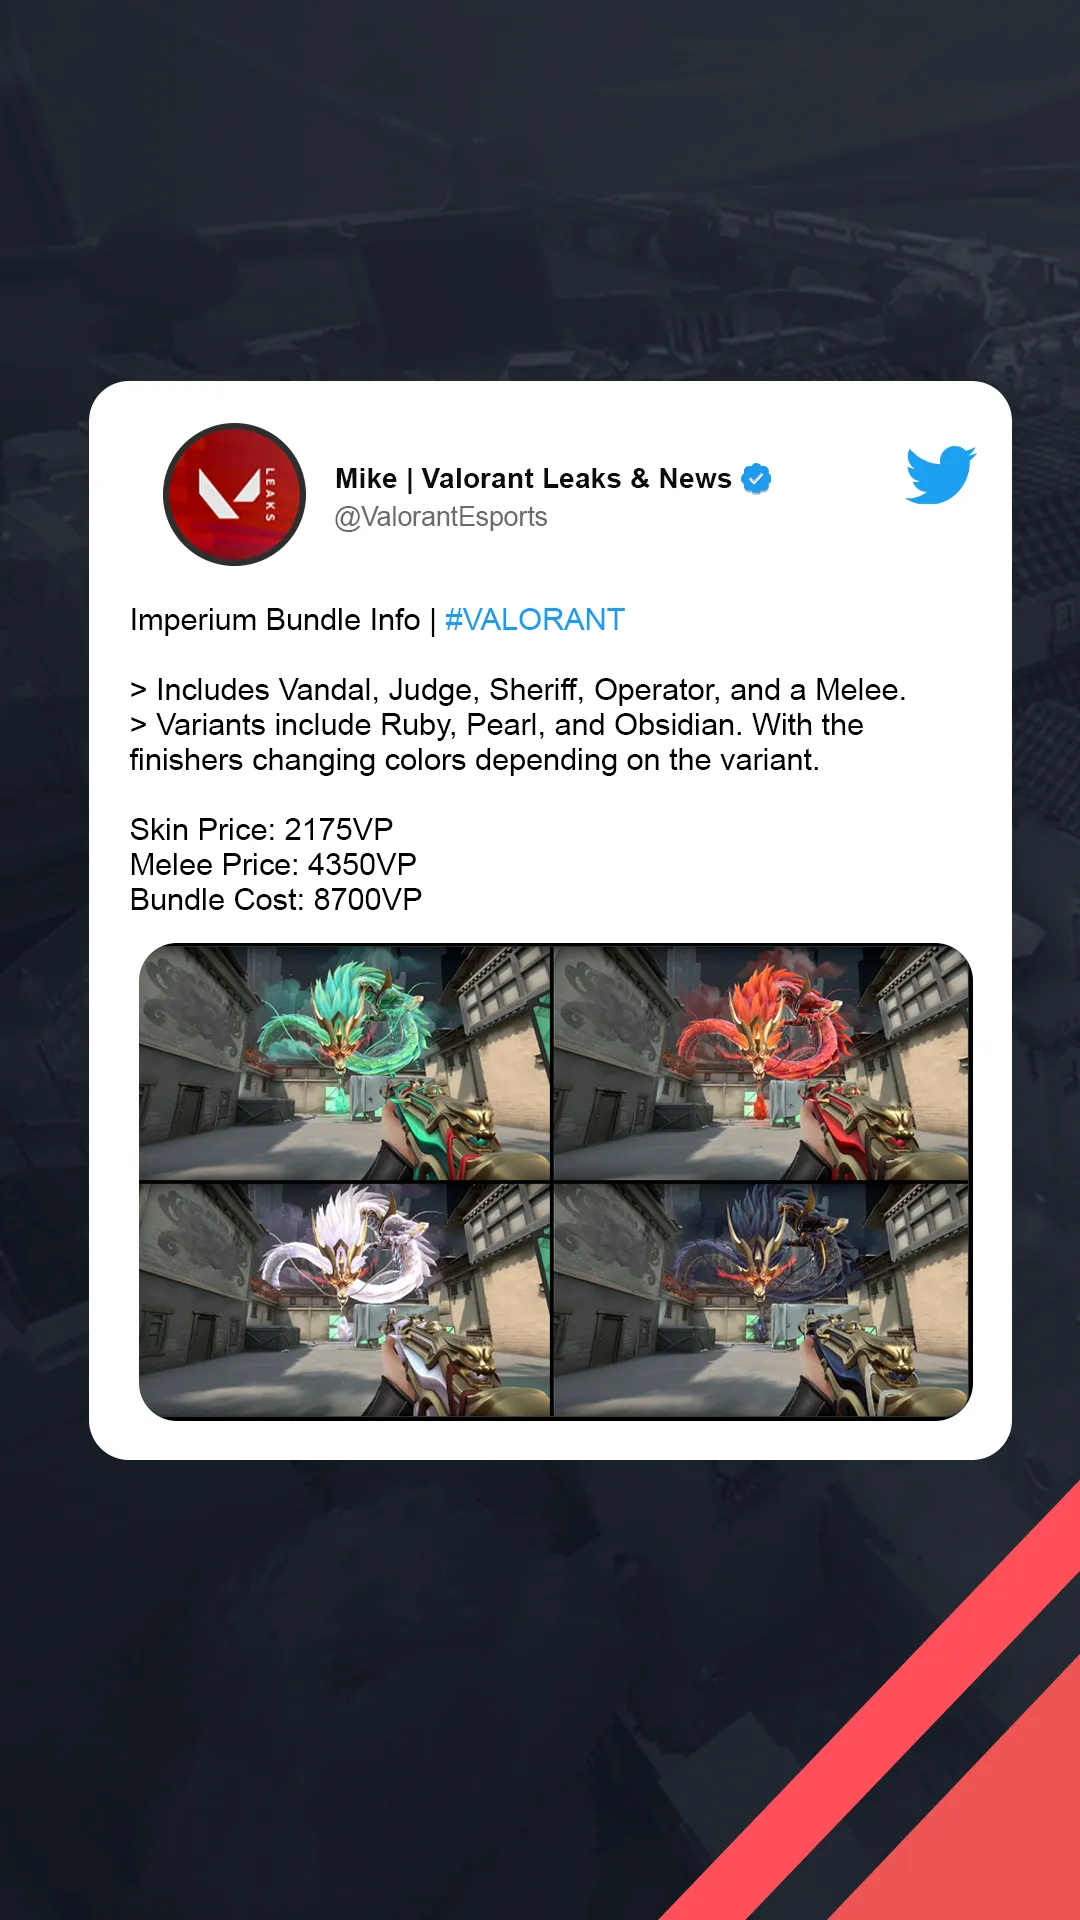 Mike, Valorant Leaks & News on X: Pearl